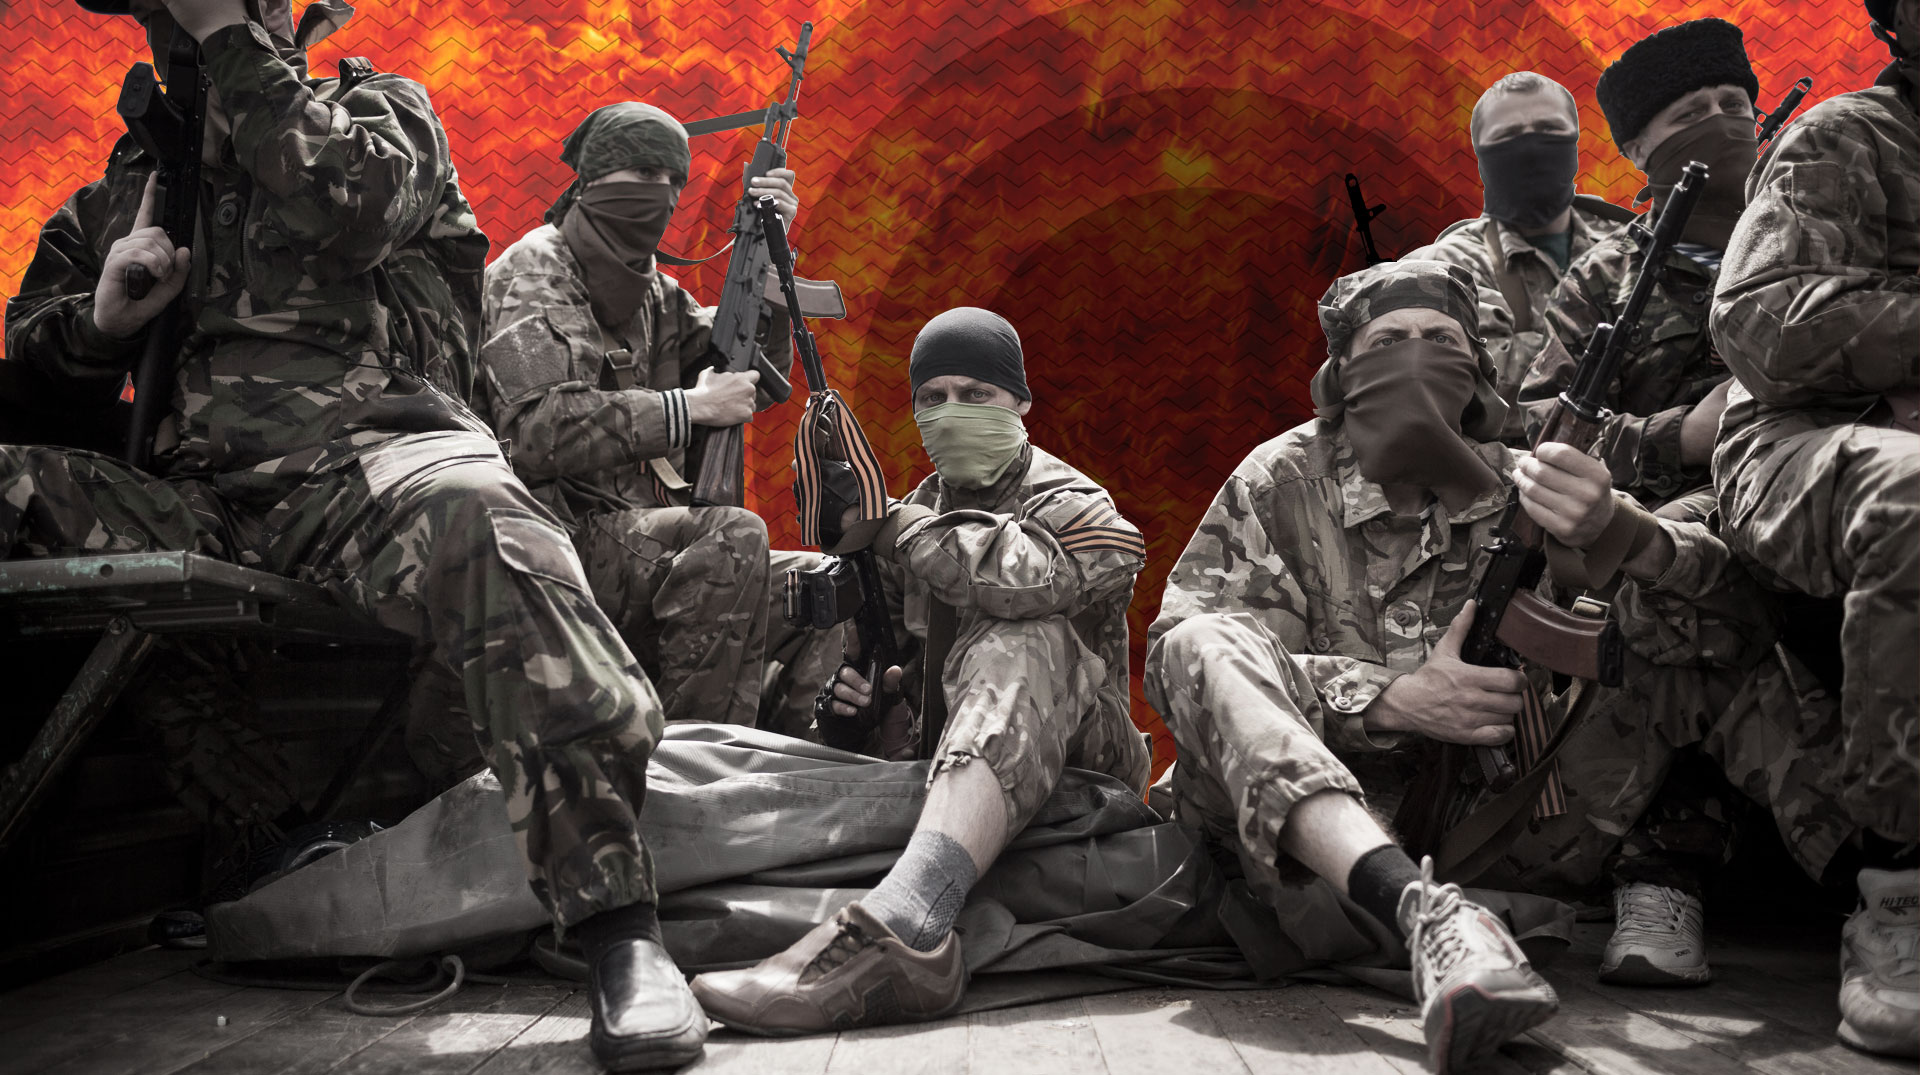 Летом 2014-го на защиту Луганска встали тысячи мужчин. Многие из них не служили в армии, многие впервые держали в руках оружие. Три года назад вчерашние шахтеры и студенты, водители и строители, мерчендайзеры и айтишники остановили украинскую армию. Многие ценой собственной жизни undefined